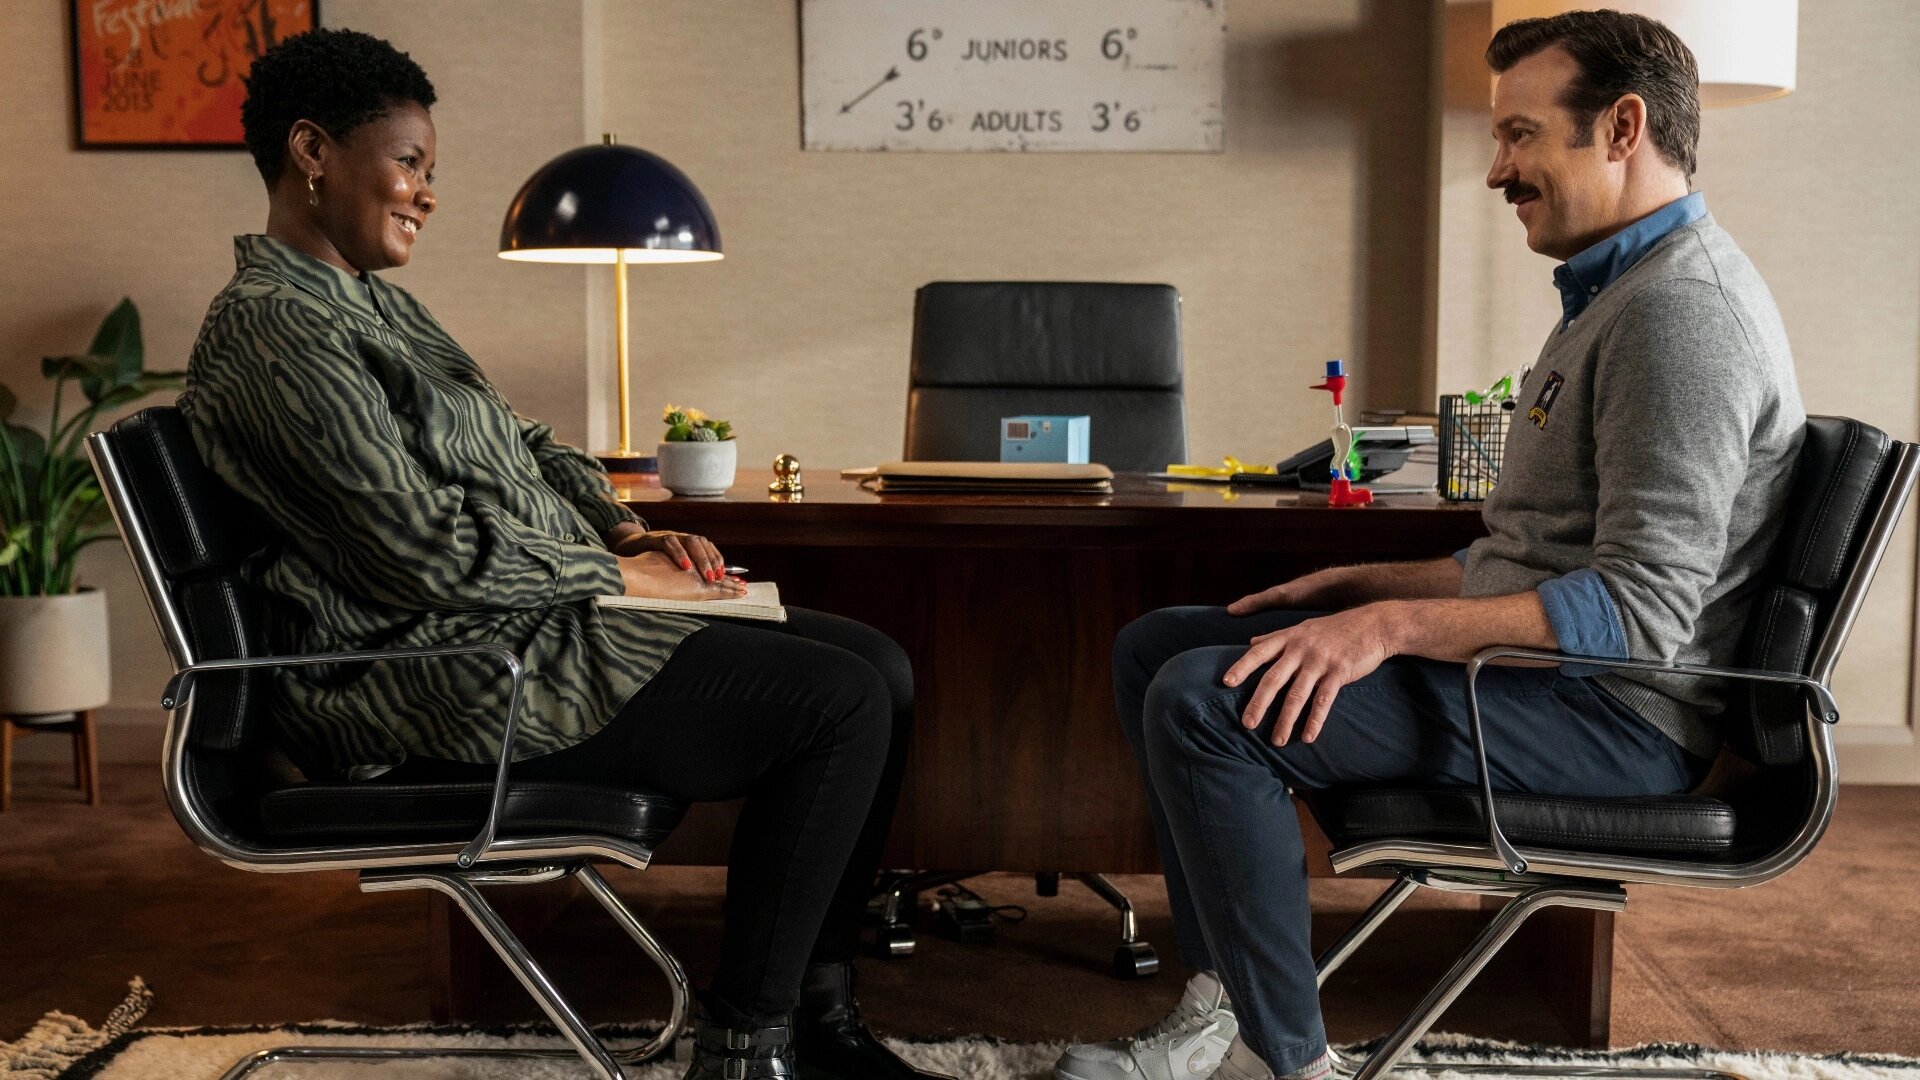 سارا نیلز در نقش شارون فیلدستون و جیسون سودیکیس در جلسه مشاوره در فصل دوم سریال Ted Lasso